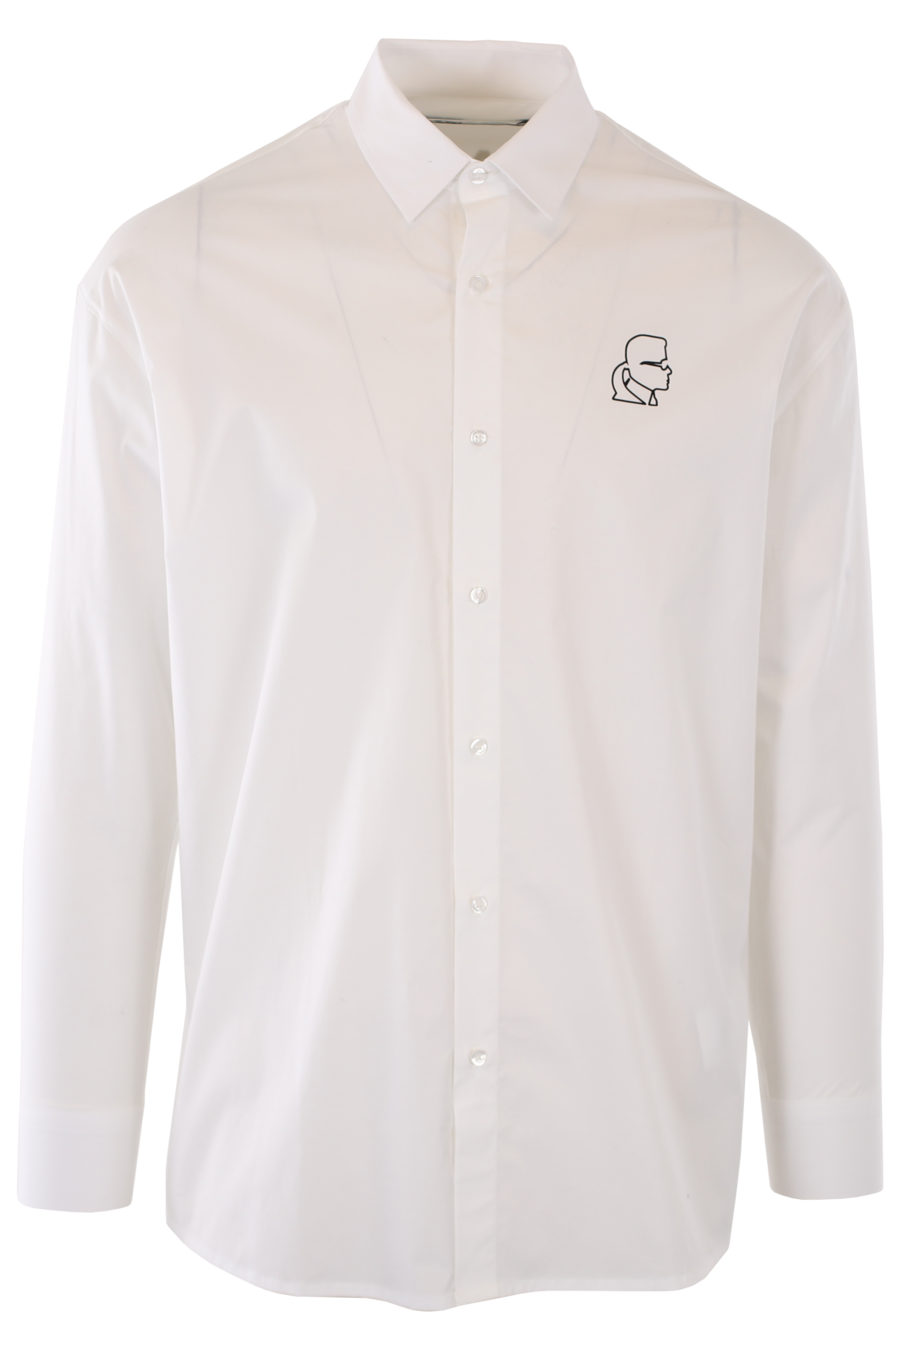 Camisa blanca con logo negro y detalle en satín - IMG 1142